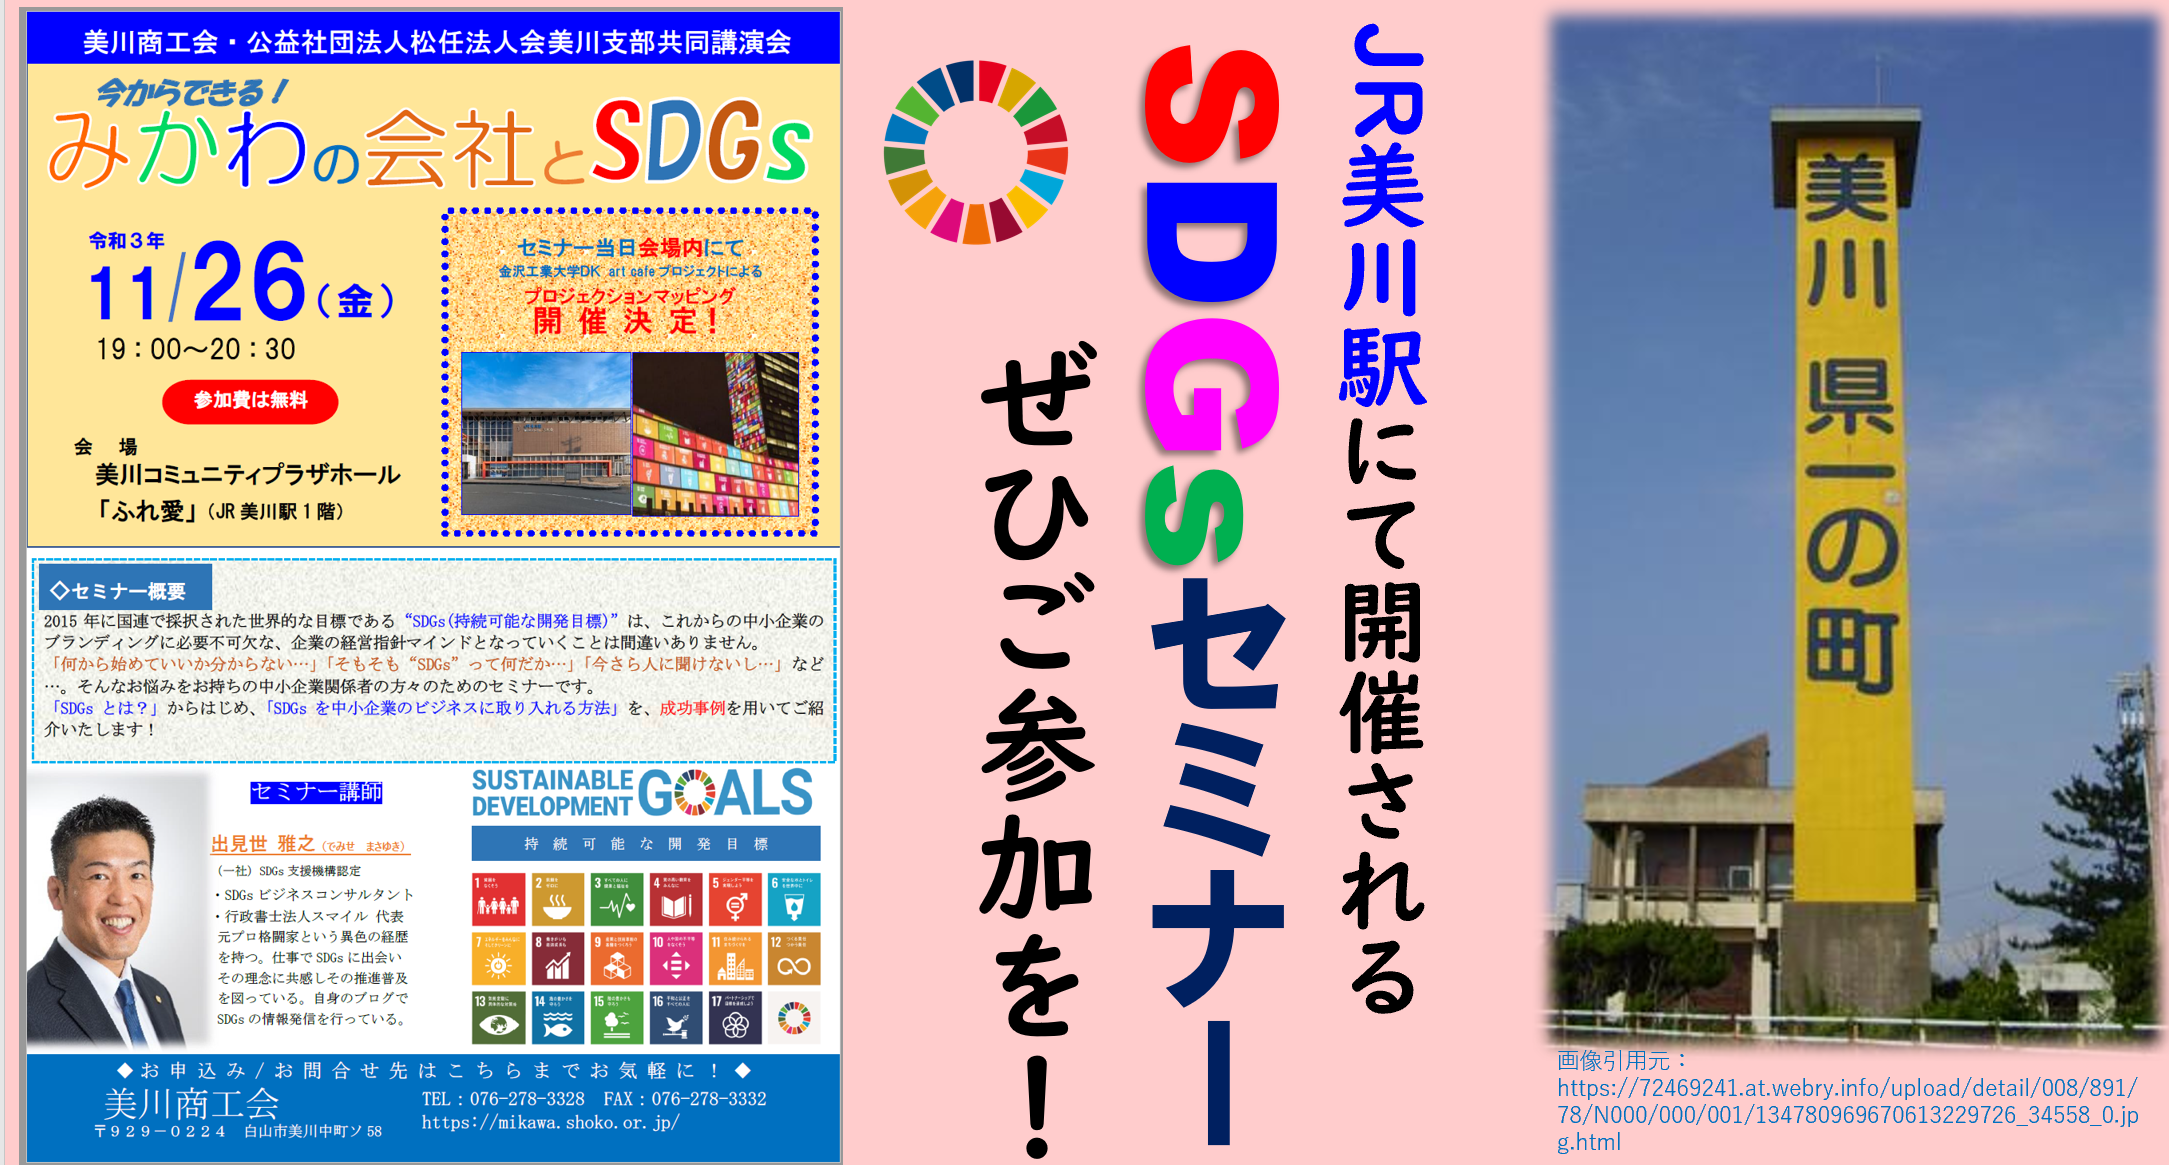 サムネR3.11.26美川商工会SDGsセミナー告知